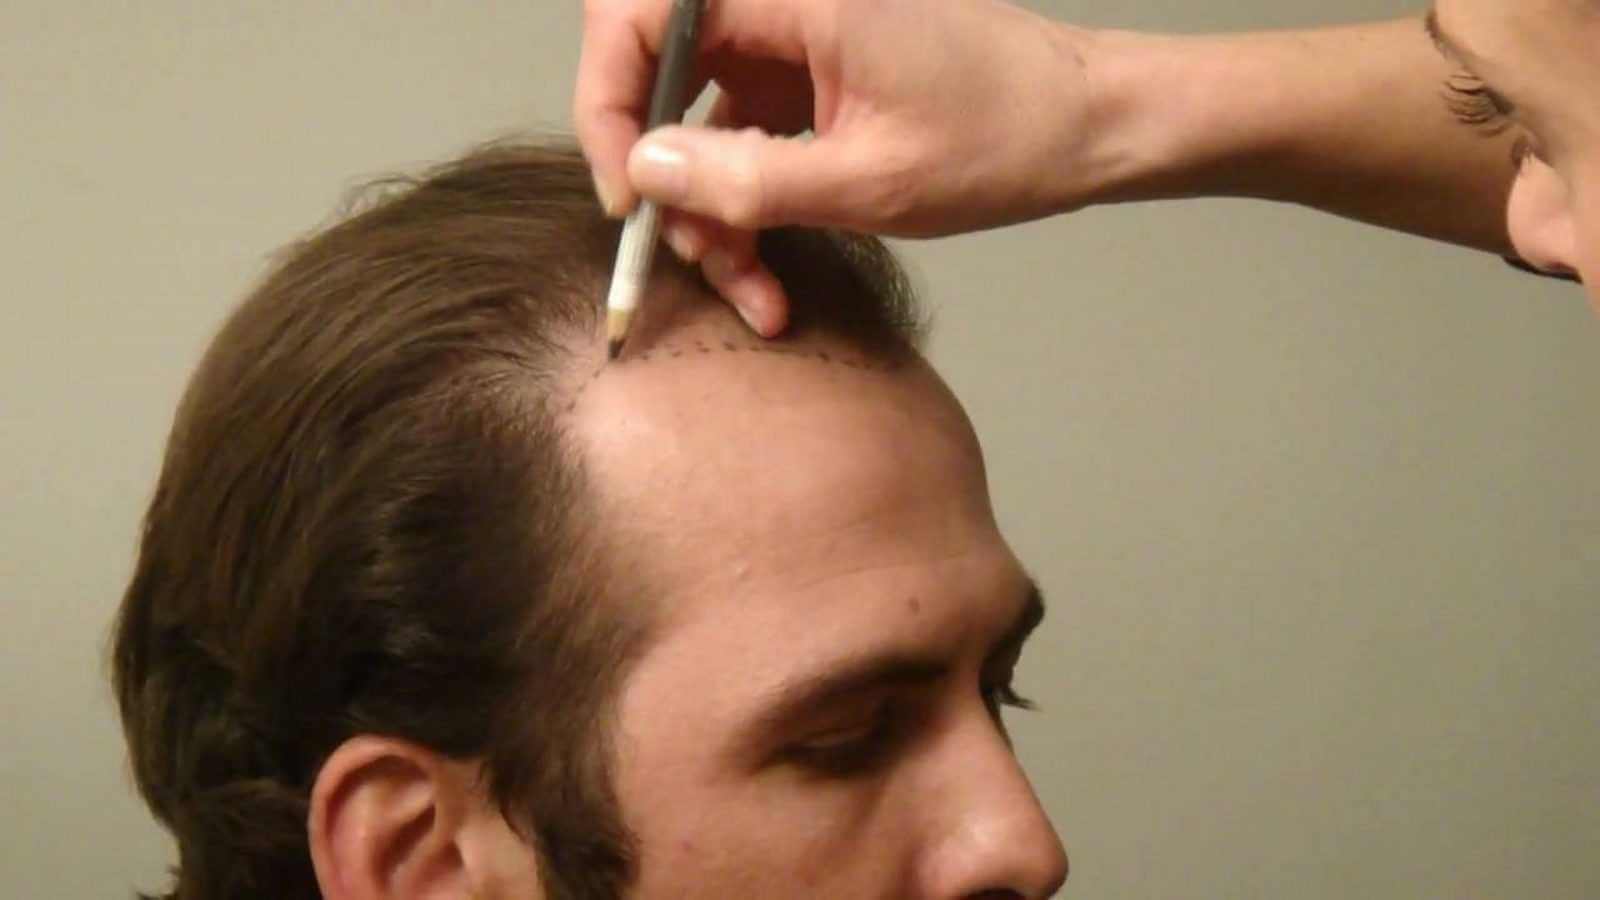 الفرق بين تقنية DHI وFUE في عمليات زراعة الشعر